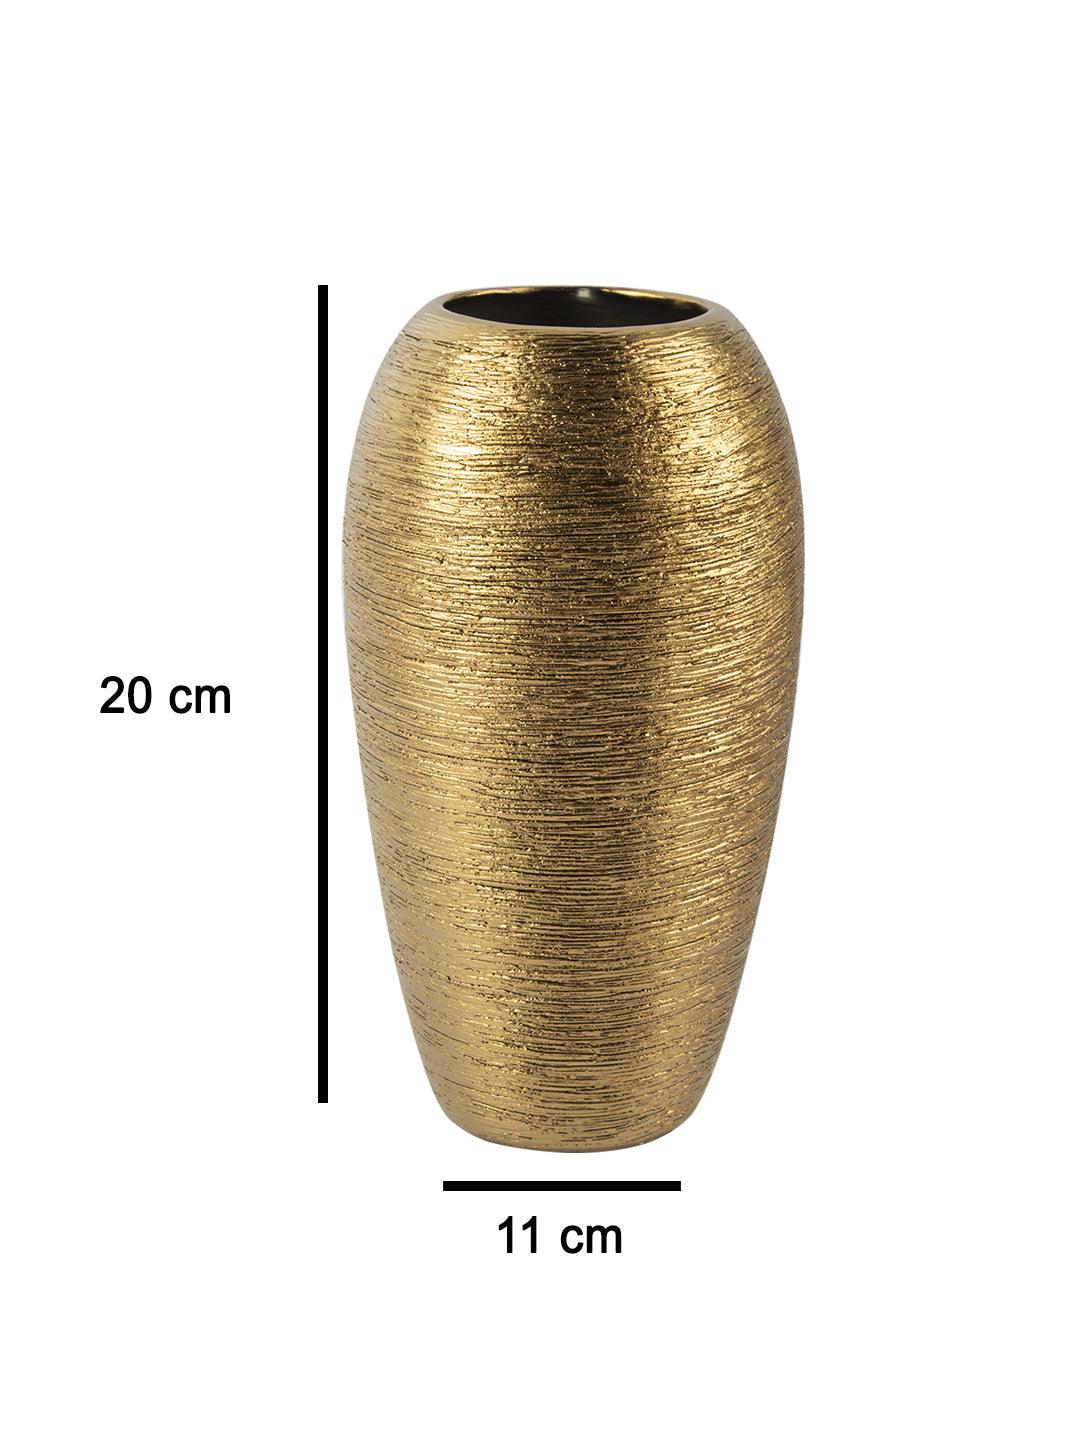 VON CASA Ceramic Gold Oval Shaped Vase - VON CASA